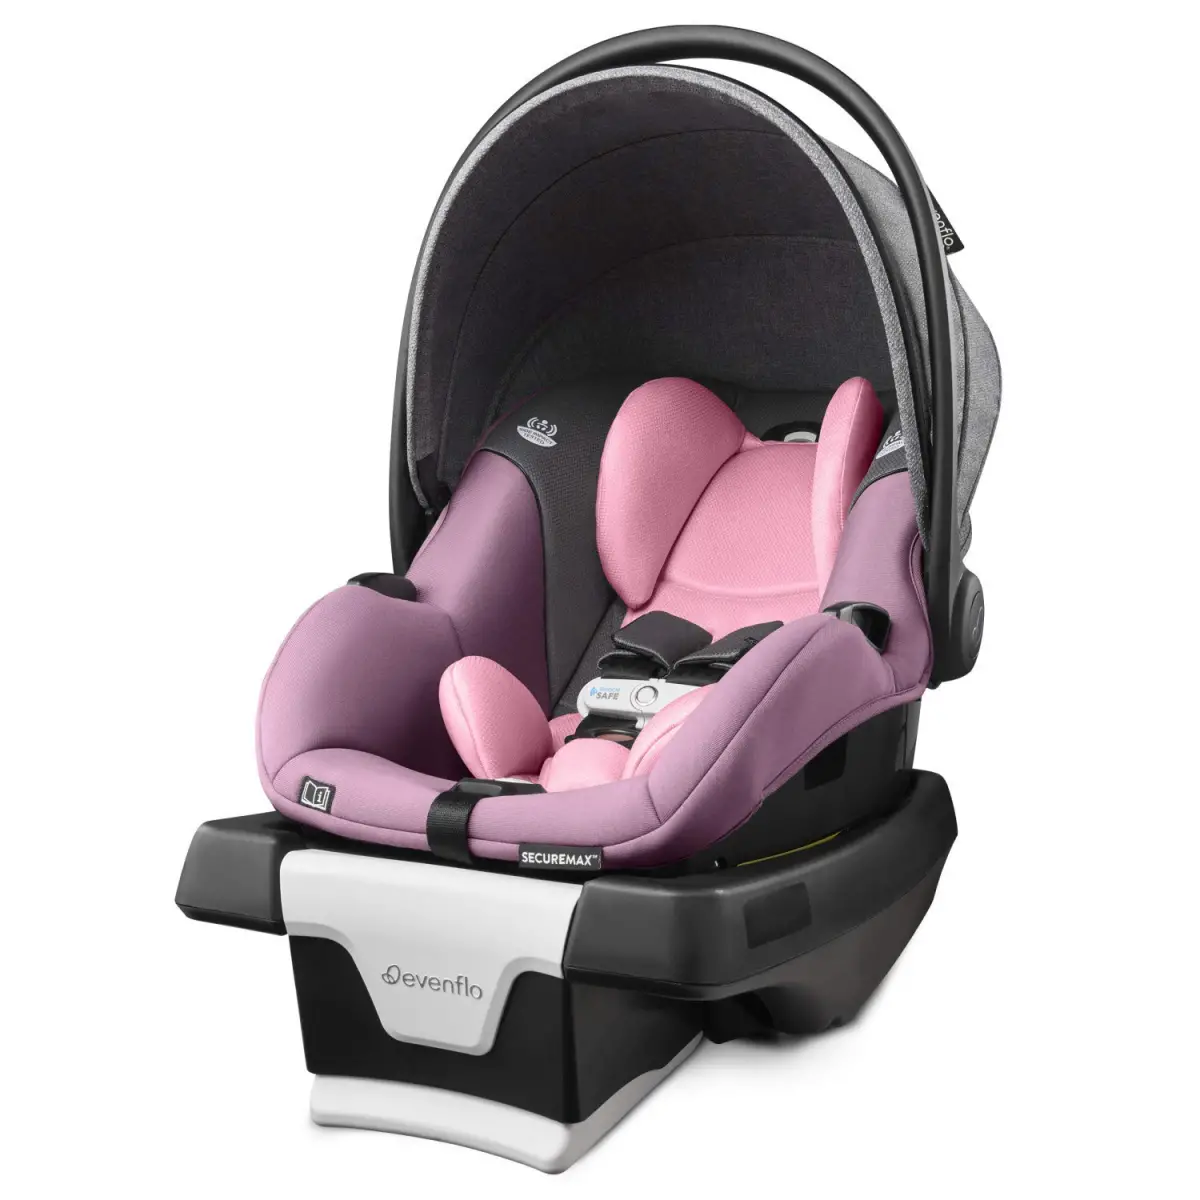 Evenflo Gold SensorSafe SecureMax Smart Infant Car Seat - best infant car seat